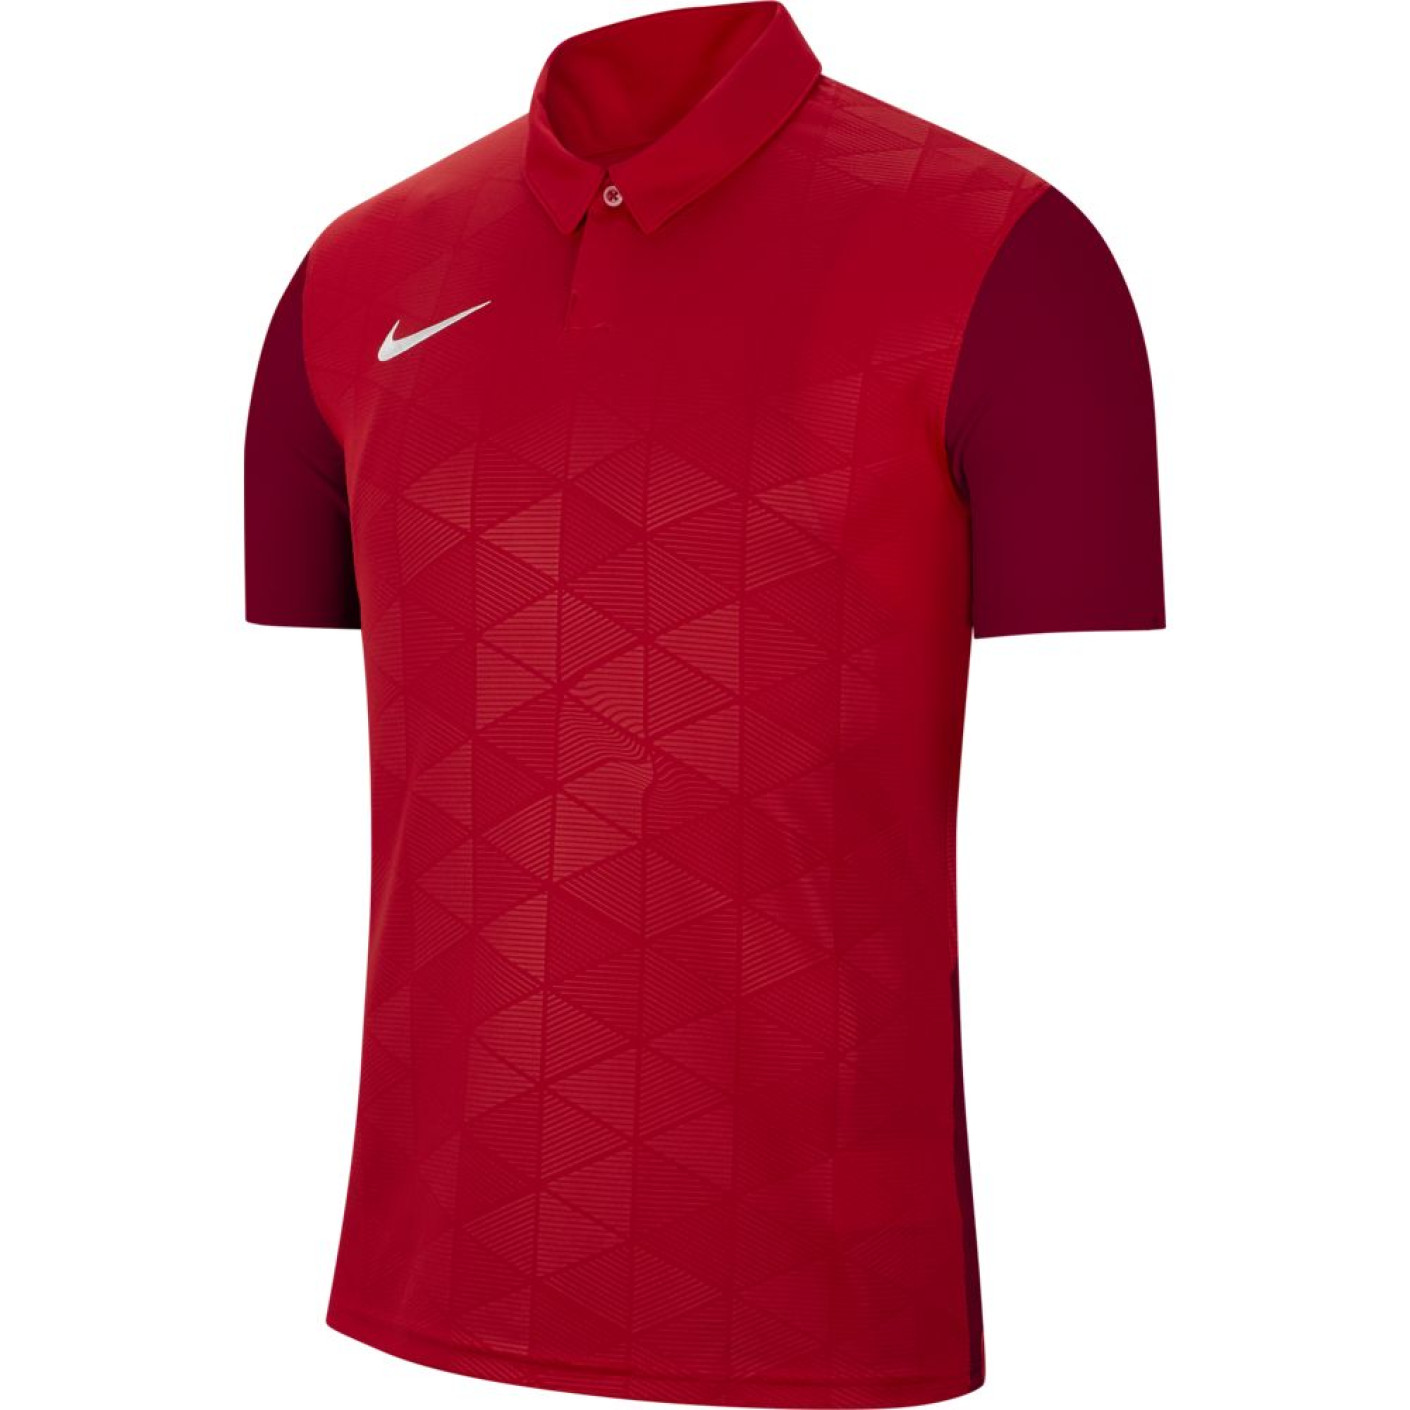 Nike TROPHY IV Voetbalshirt Rood Rood Wit